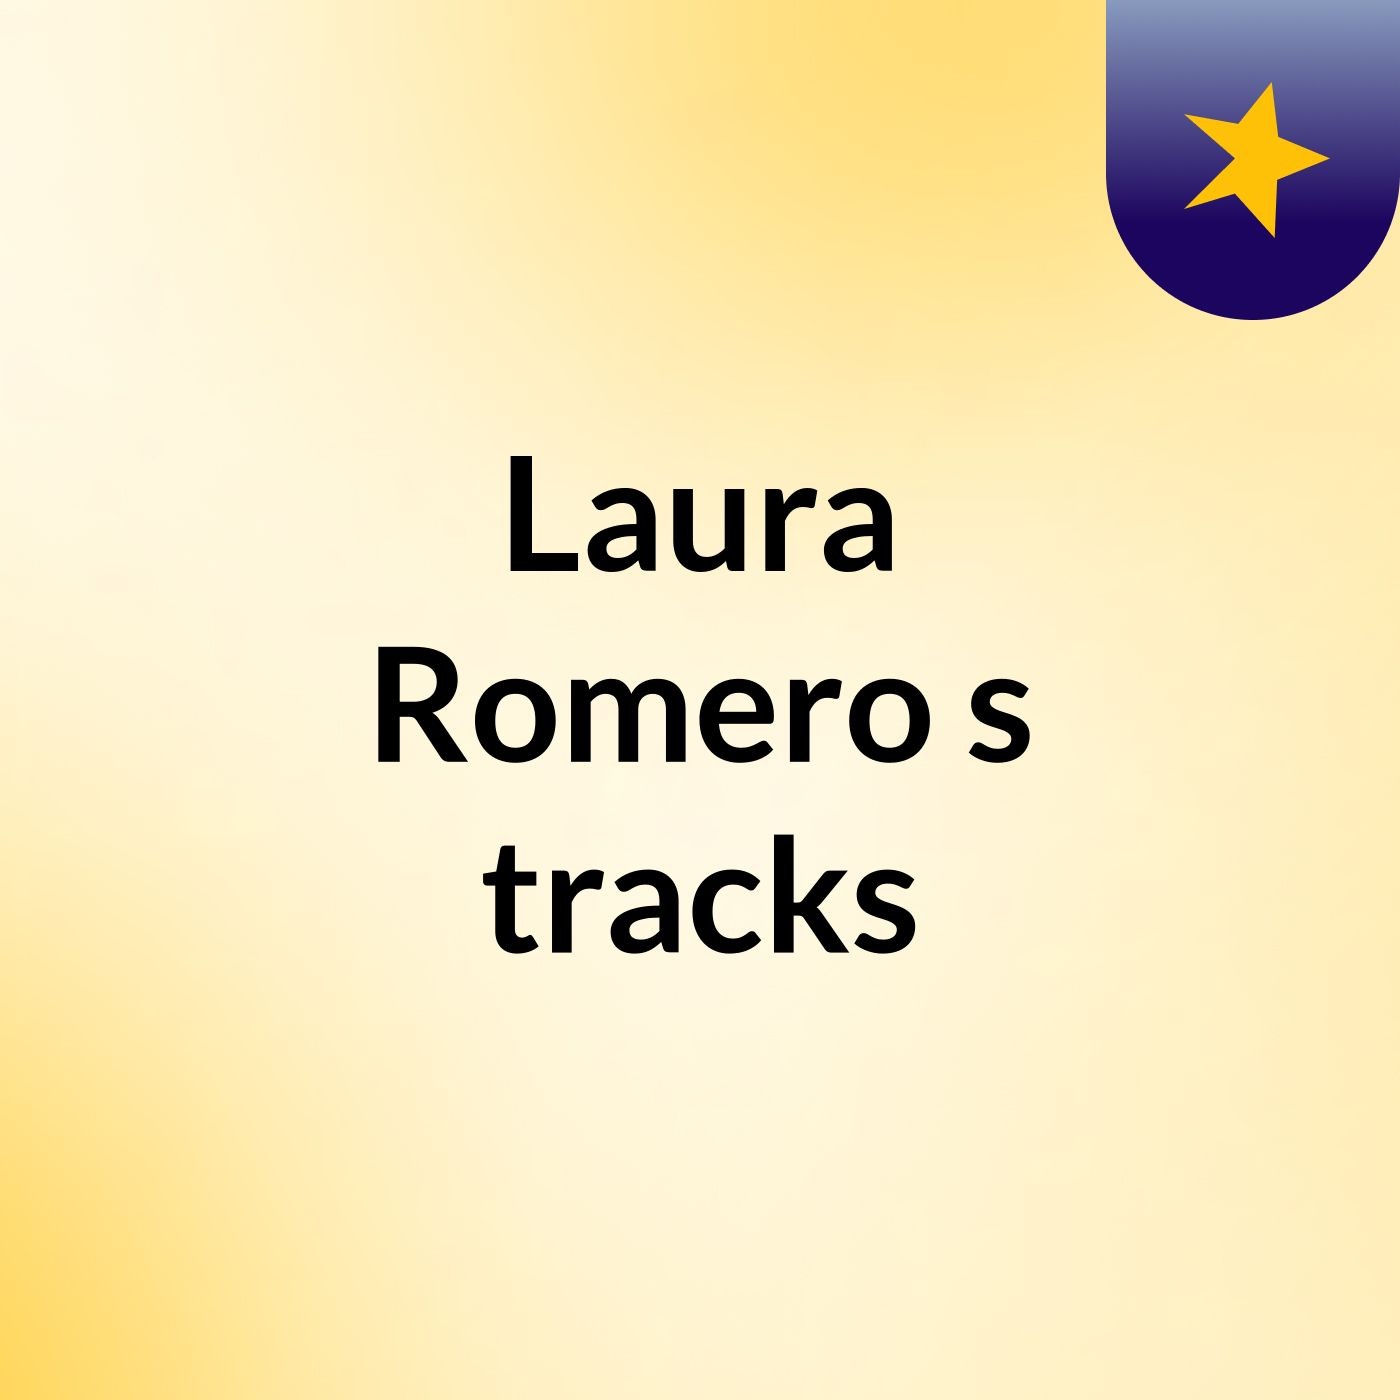 Laura Romero's tracks